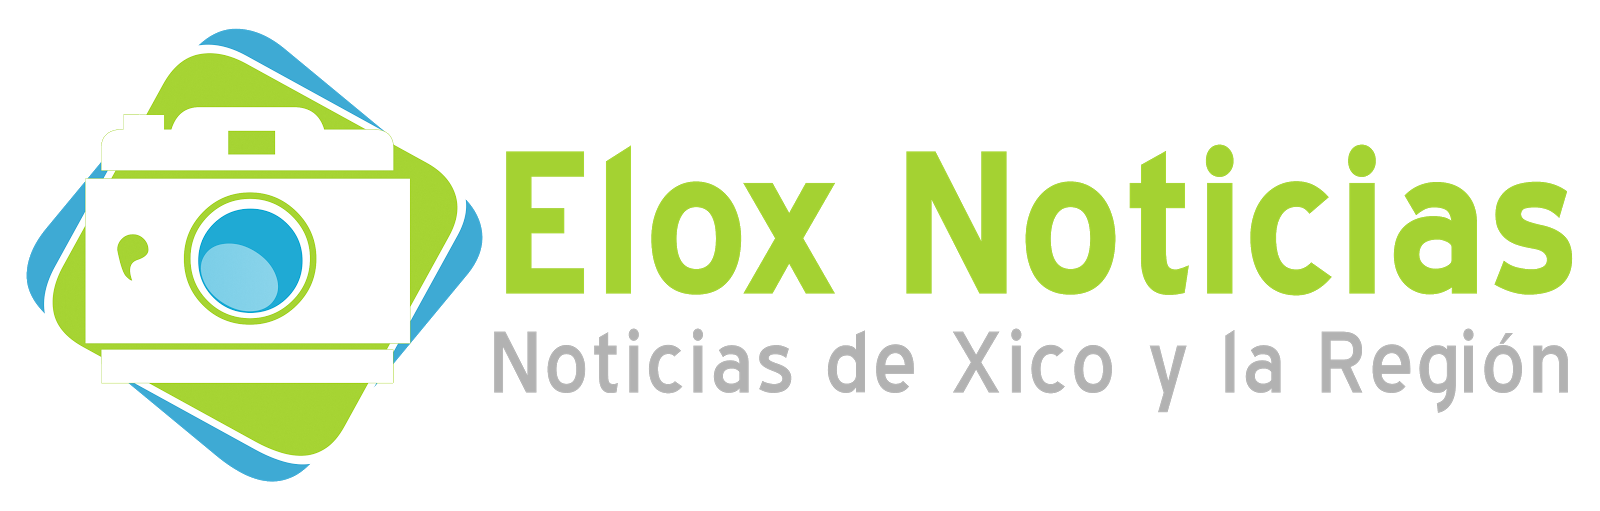 Elox Noticias Web